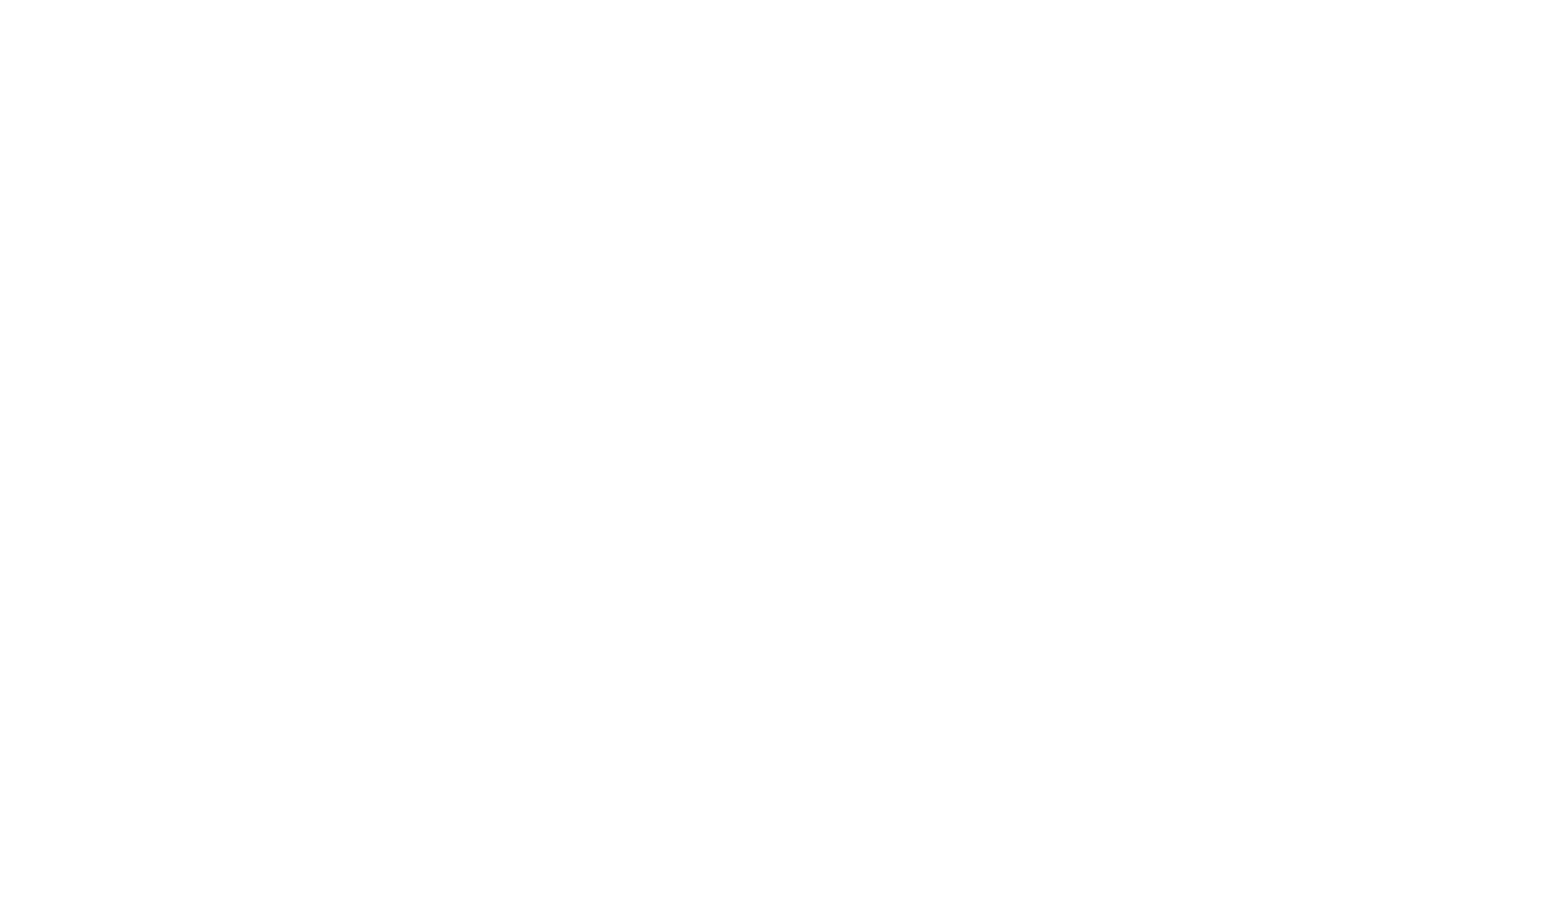 inTEST Corporation logo for dark backgrounds (transparent PNG)